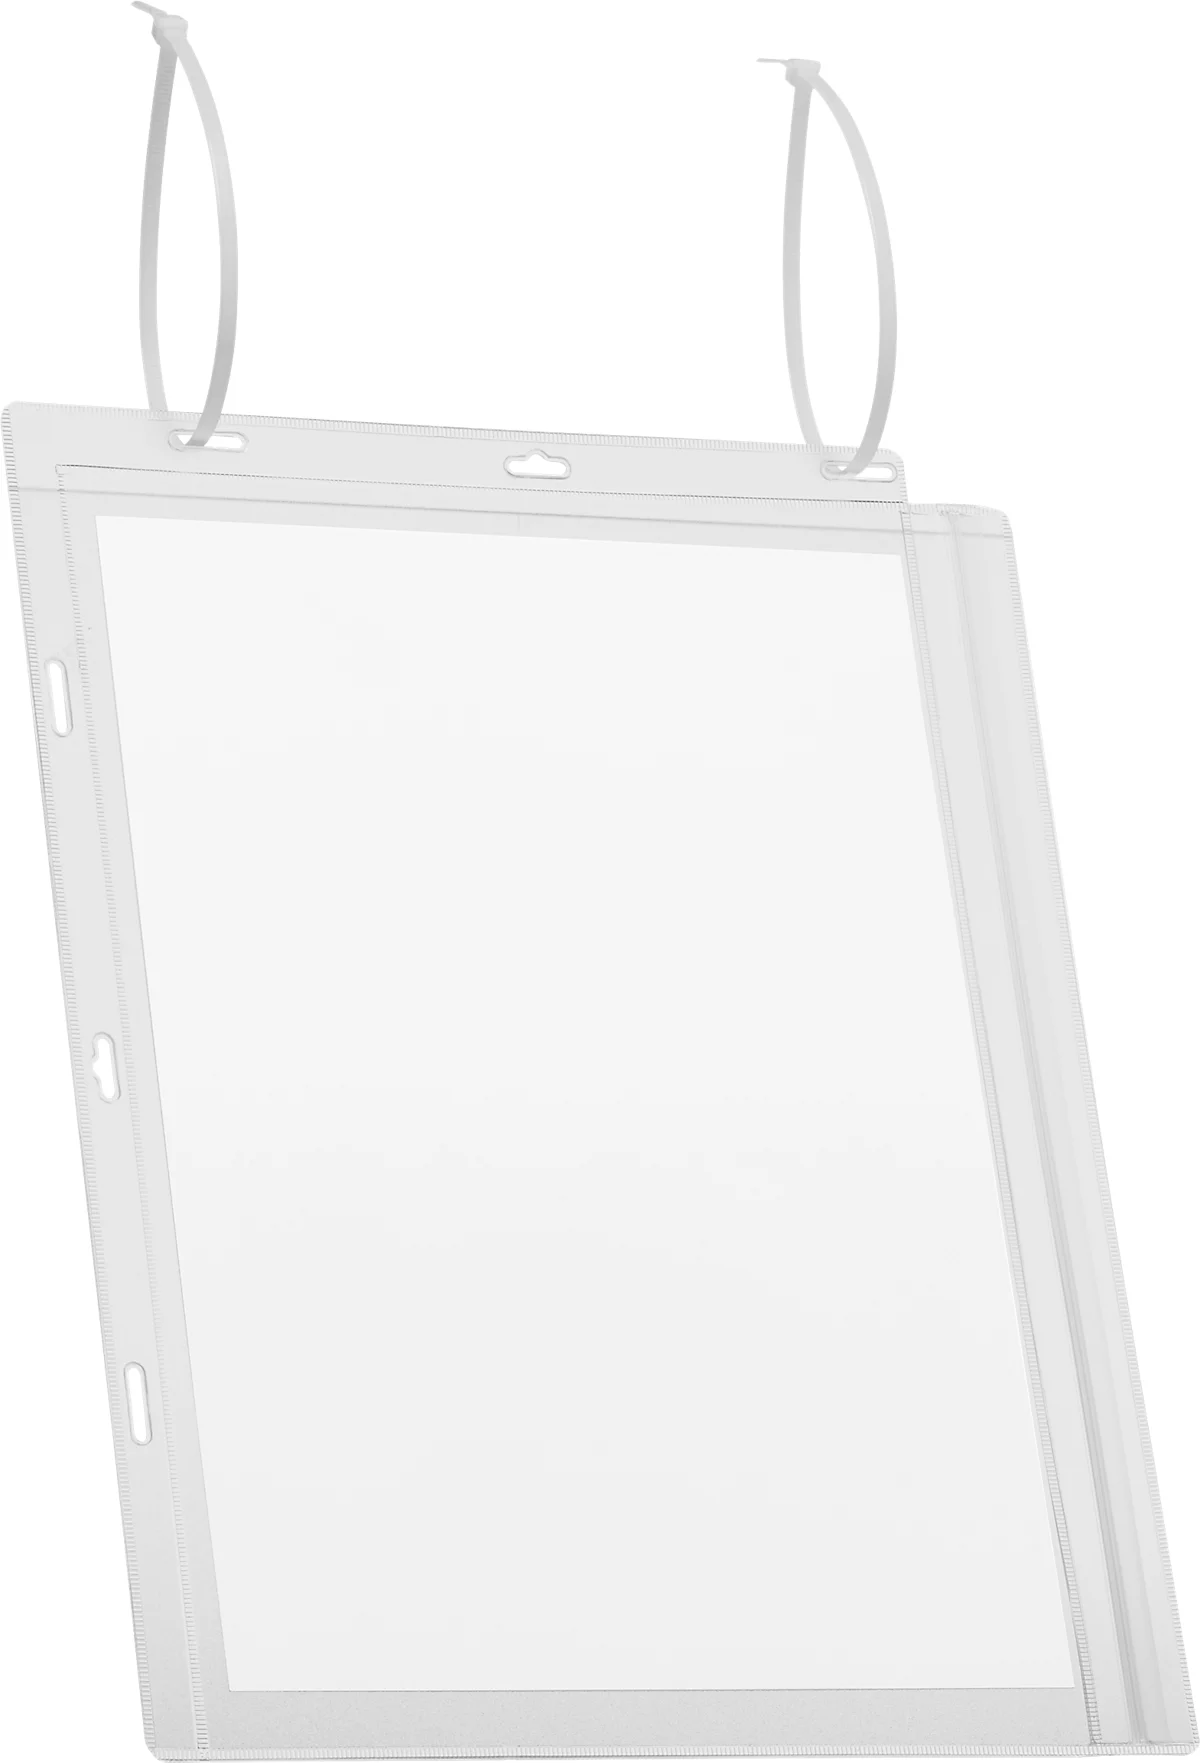 Plakattasche Durable, A4 Hoch- & Querformat, 2-seitig, für bis zu 2 Blatt, Kabelbinder, wasserdicht, B 262 x T 0,6 x H 340 mm, transparent, 5 Stück